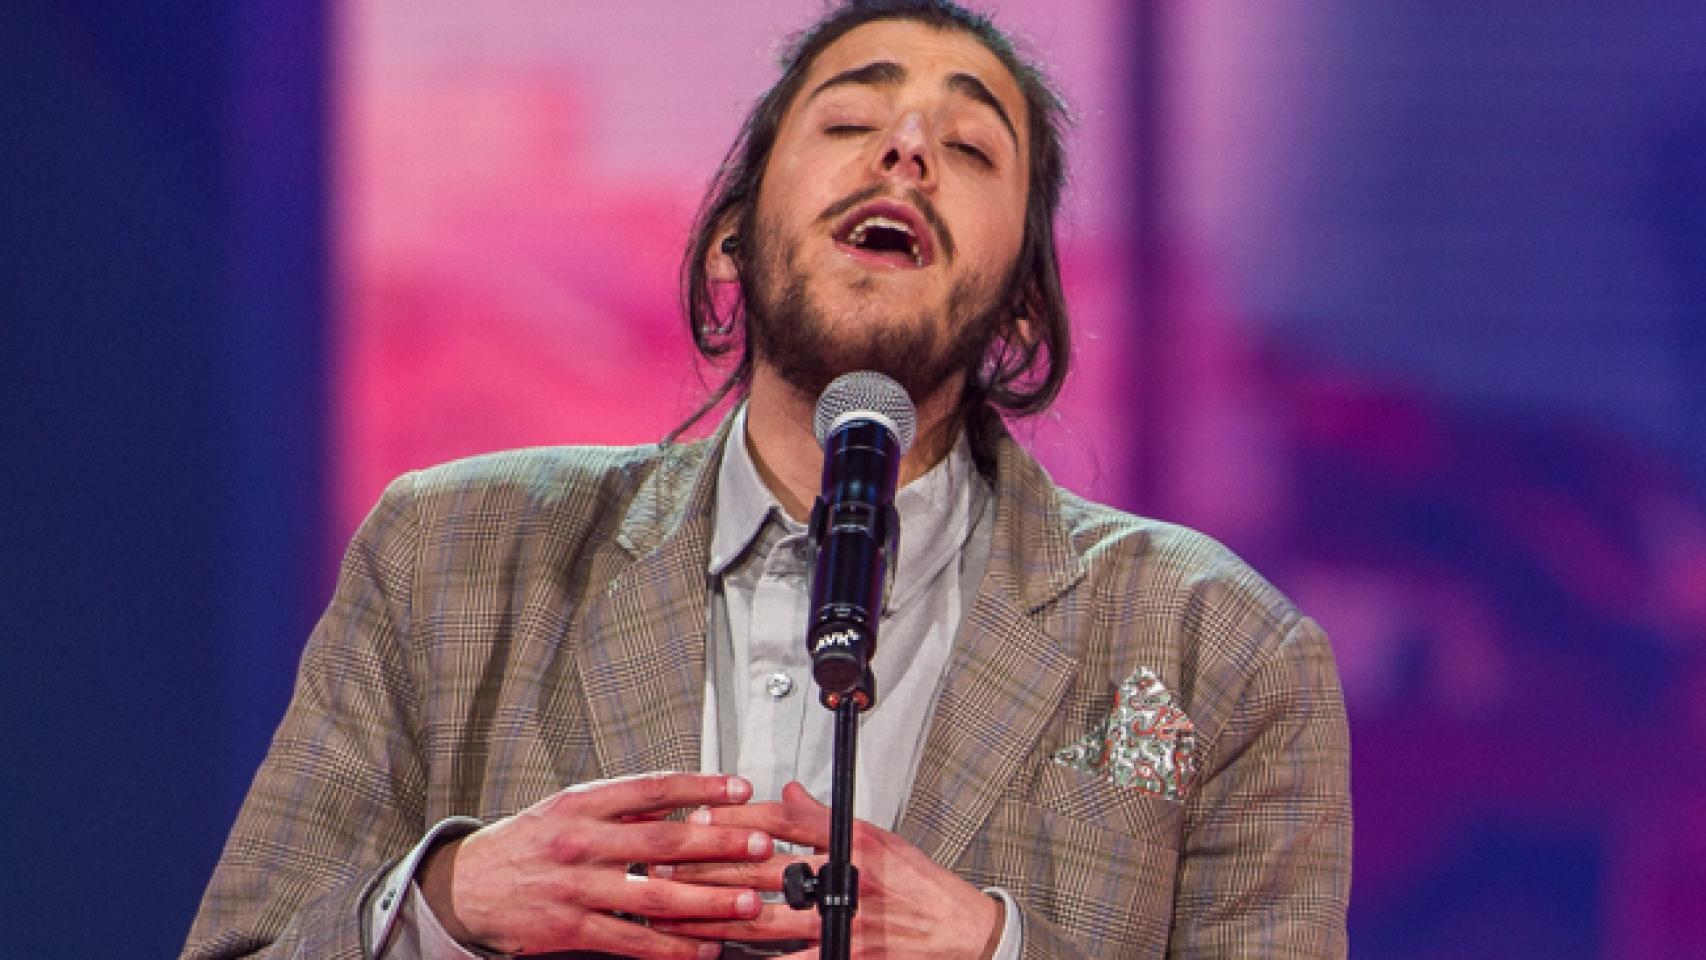 La grave enfermedad de Salvador Sobral pone en riesgo su participación en Eurovisión